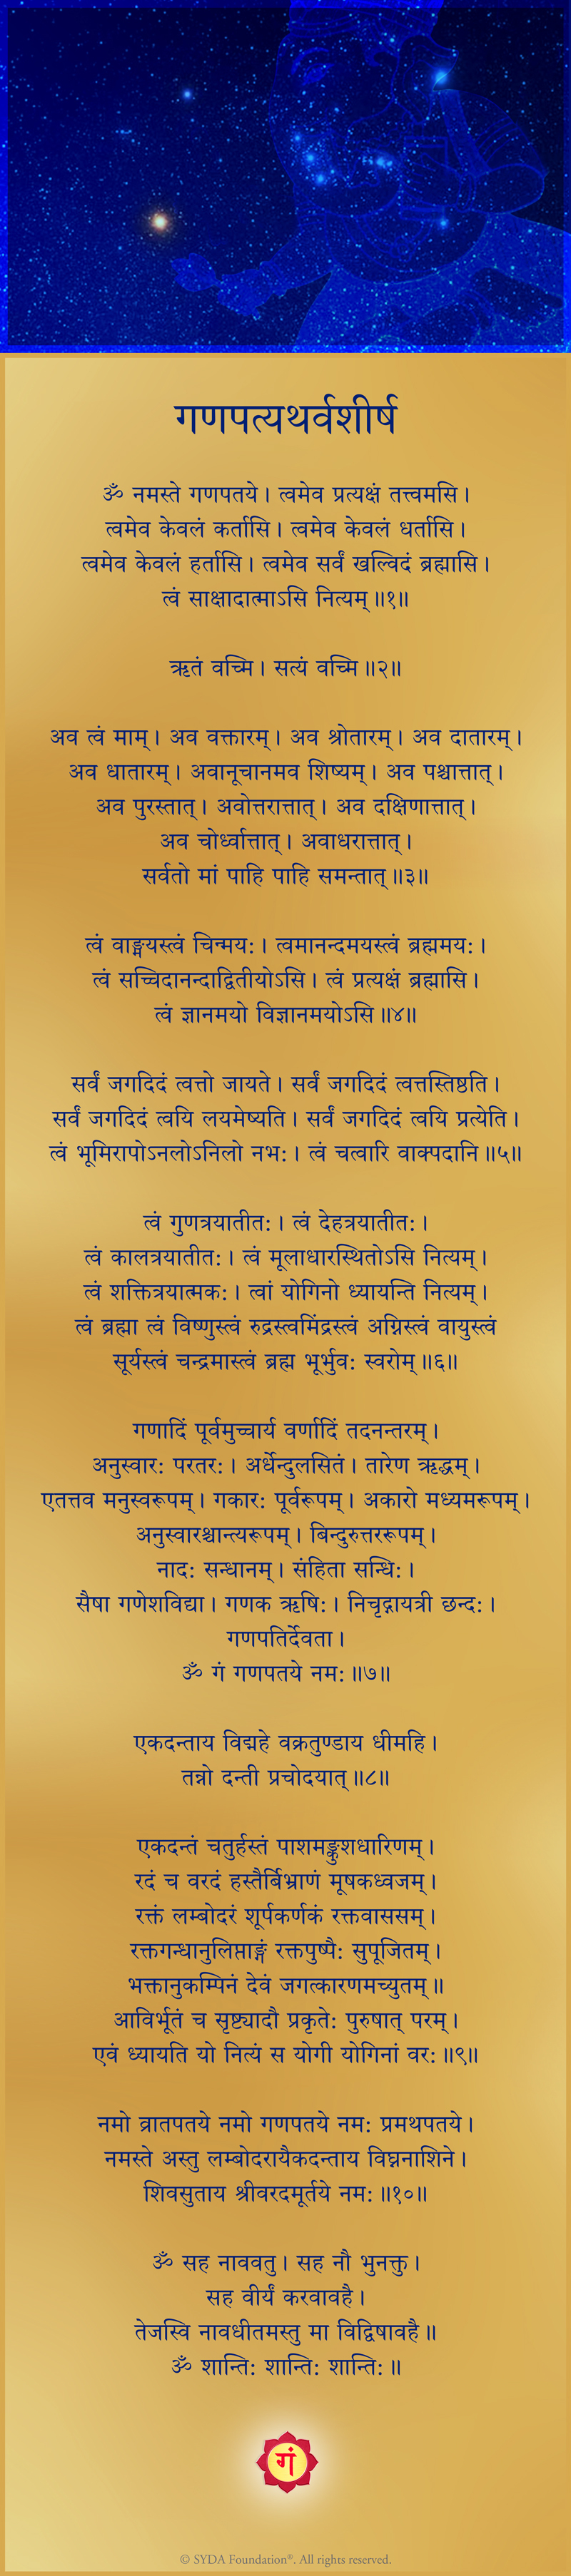 Atharvashirsha - in Sanskrit